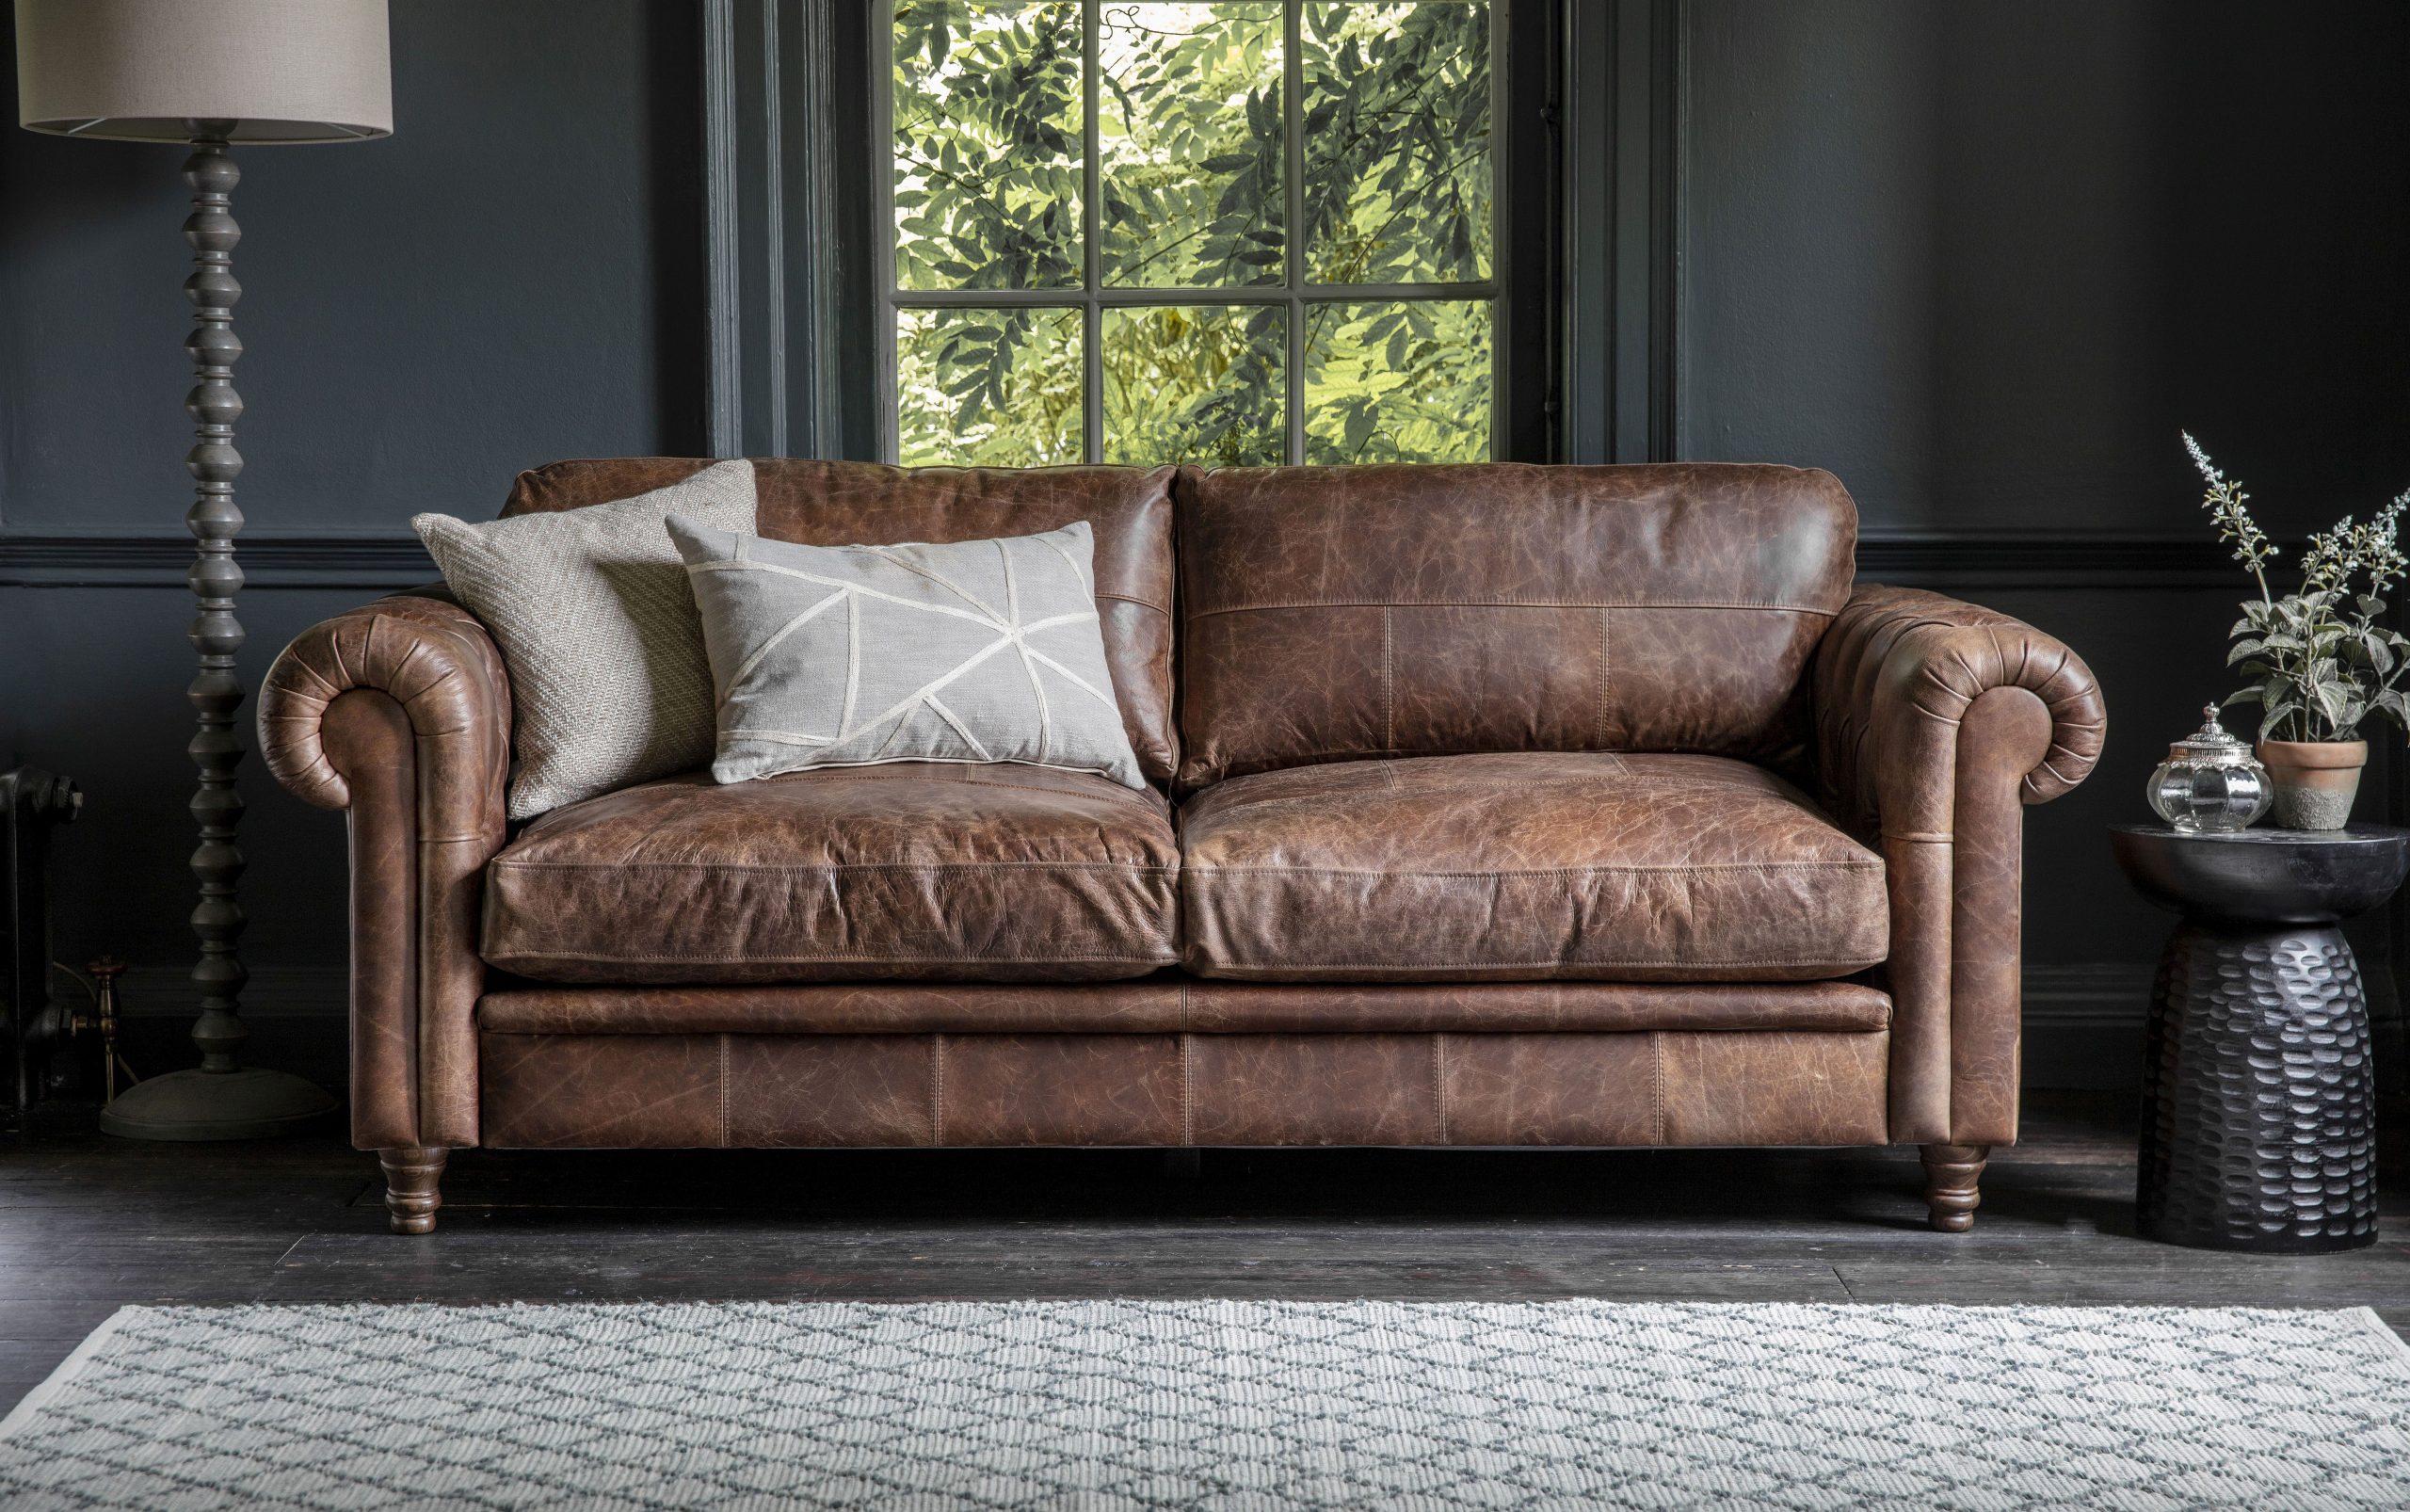 Abundant and distinctive living room seating options